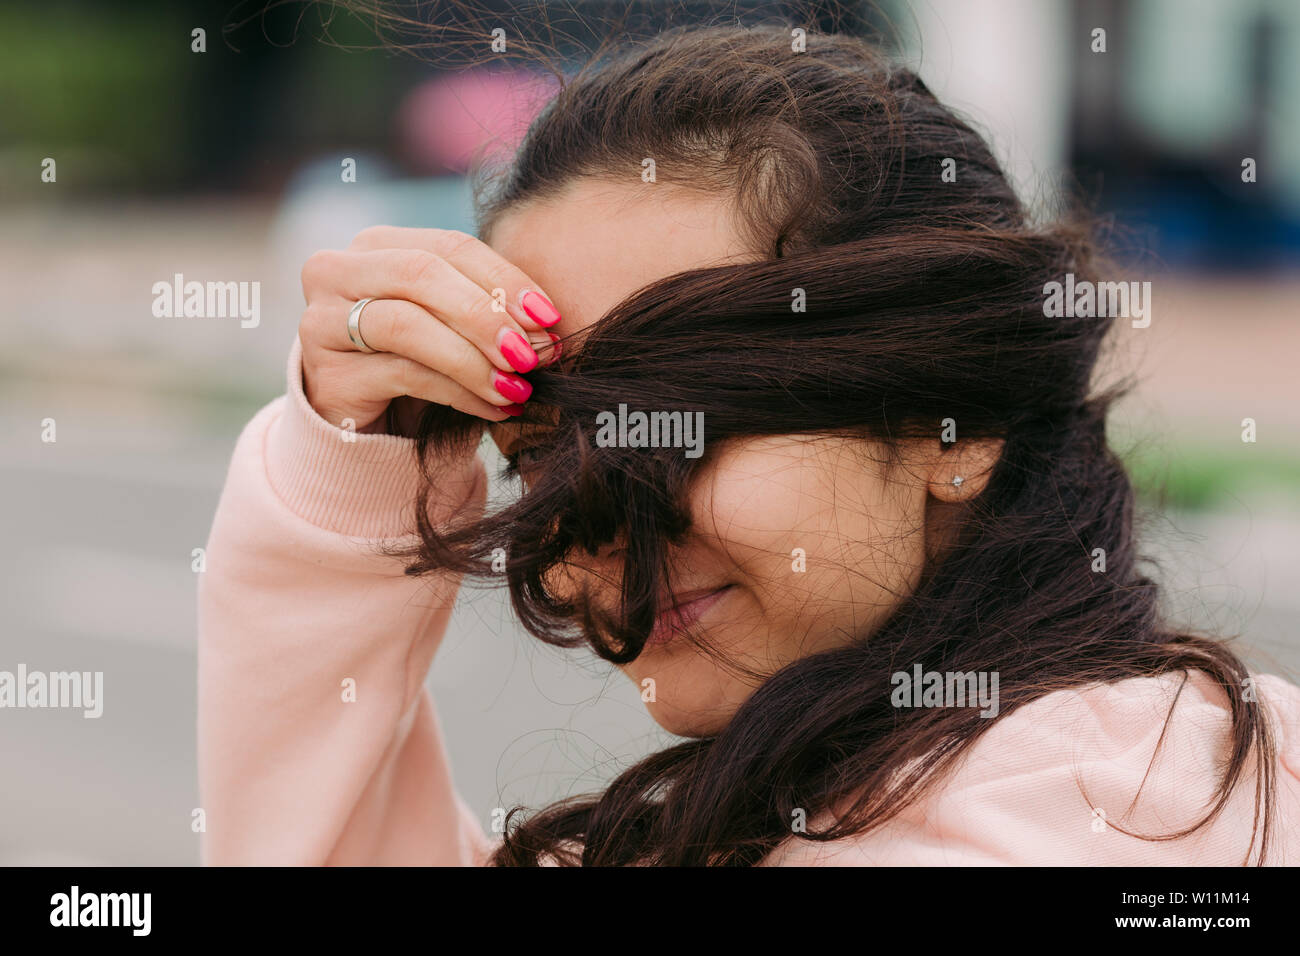 Chica cubre su cara con el cabello y travesuras Foto de stock